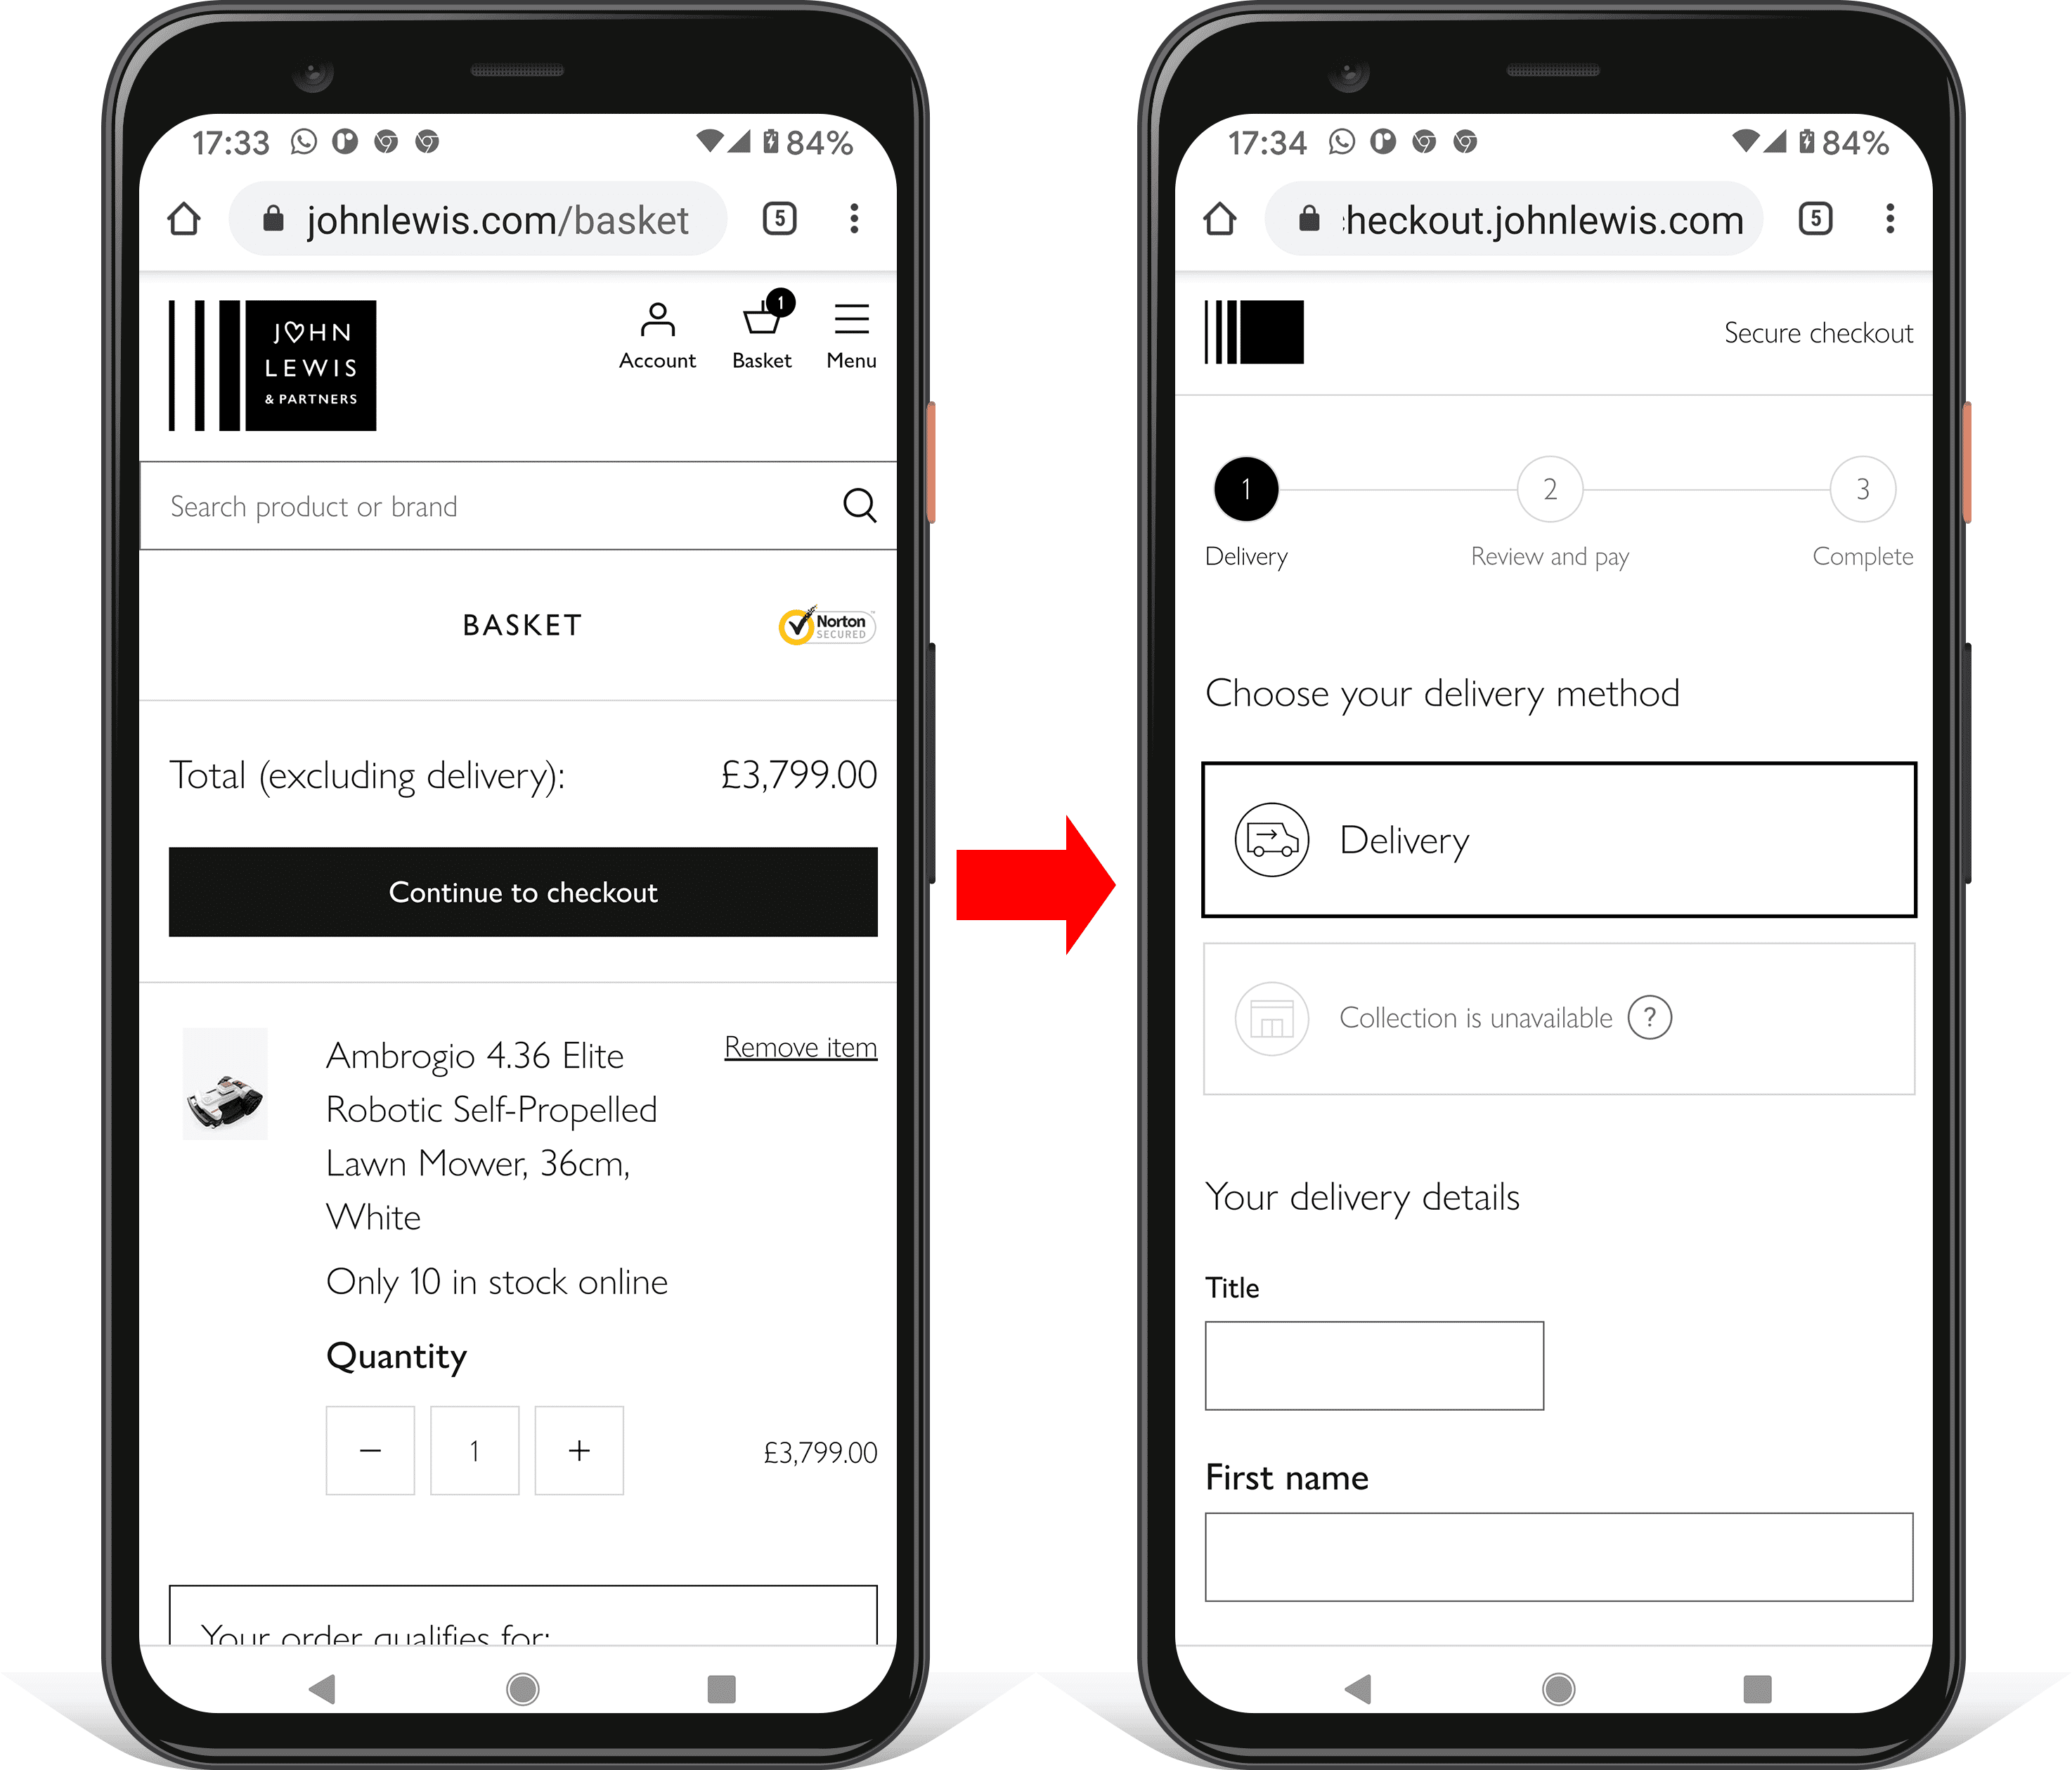 دو اسکرین شات روی تلفن همراه نشان دهنده پیشرفت در پرداخت johnlewis.com. جستجو، ناوبری و سایر عوامل حواس پرتی حذف می شوند.